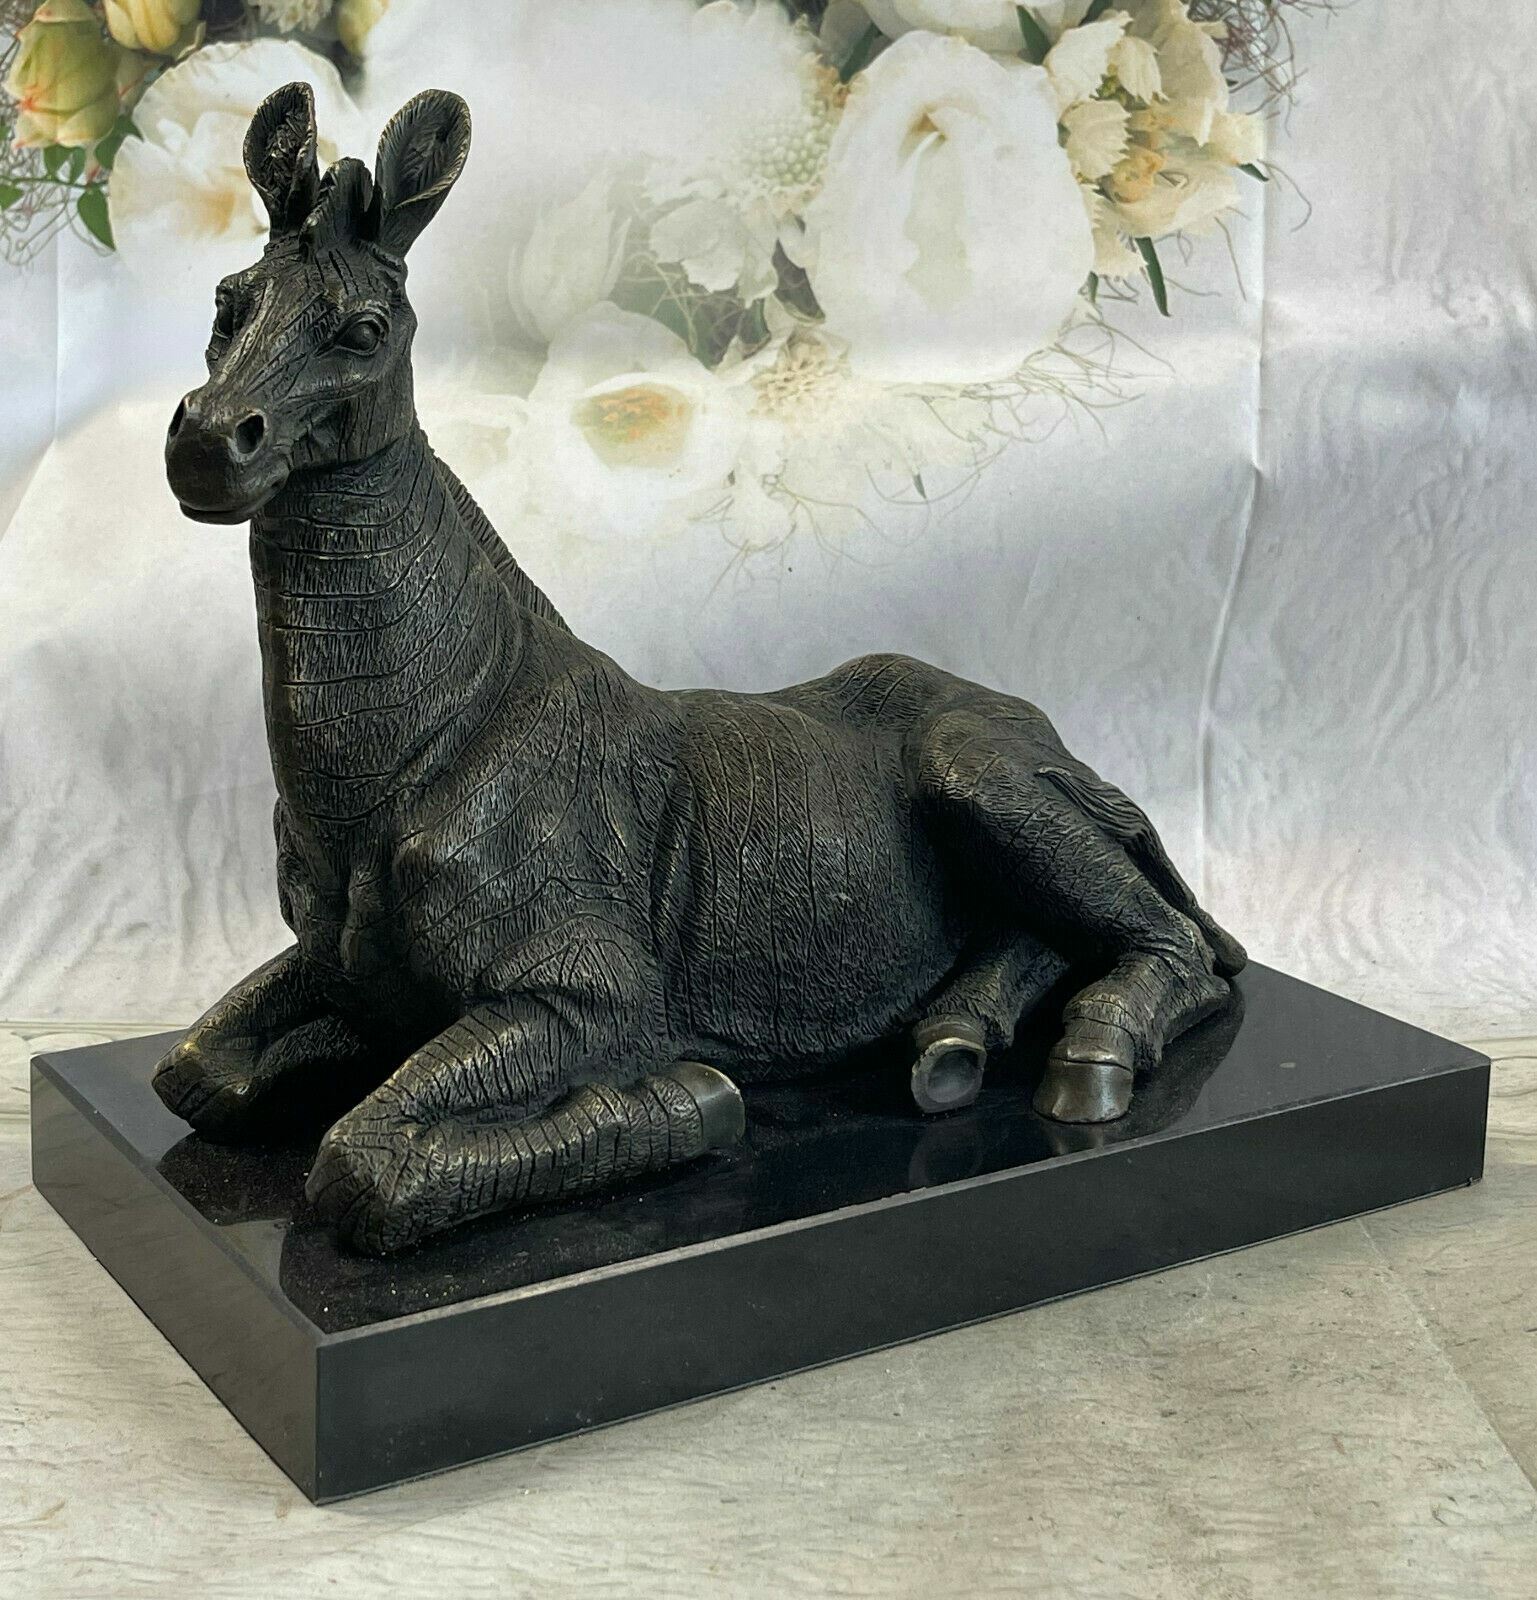 Handmade bronze sculpture Decor Base Marble Deco Art Zebra African Hotcast ART